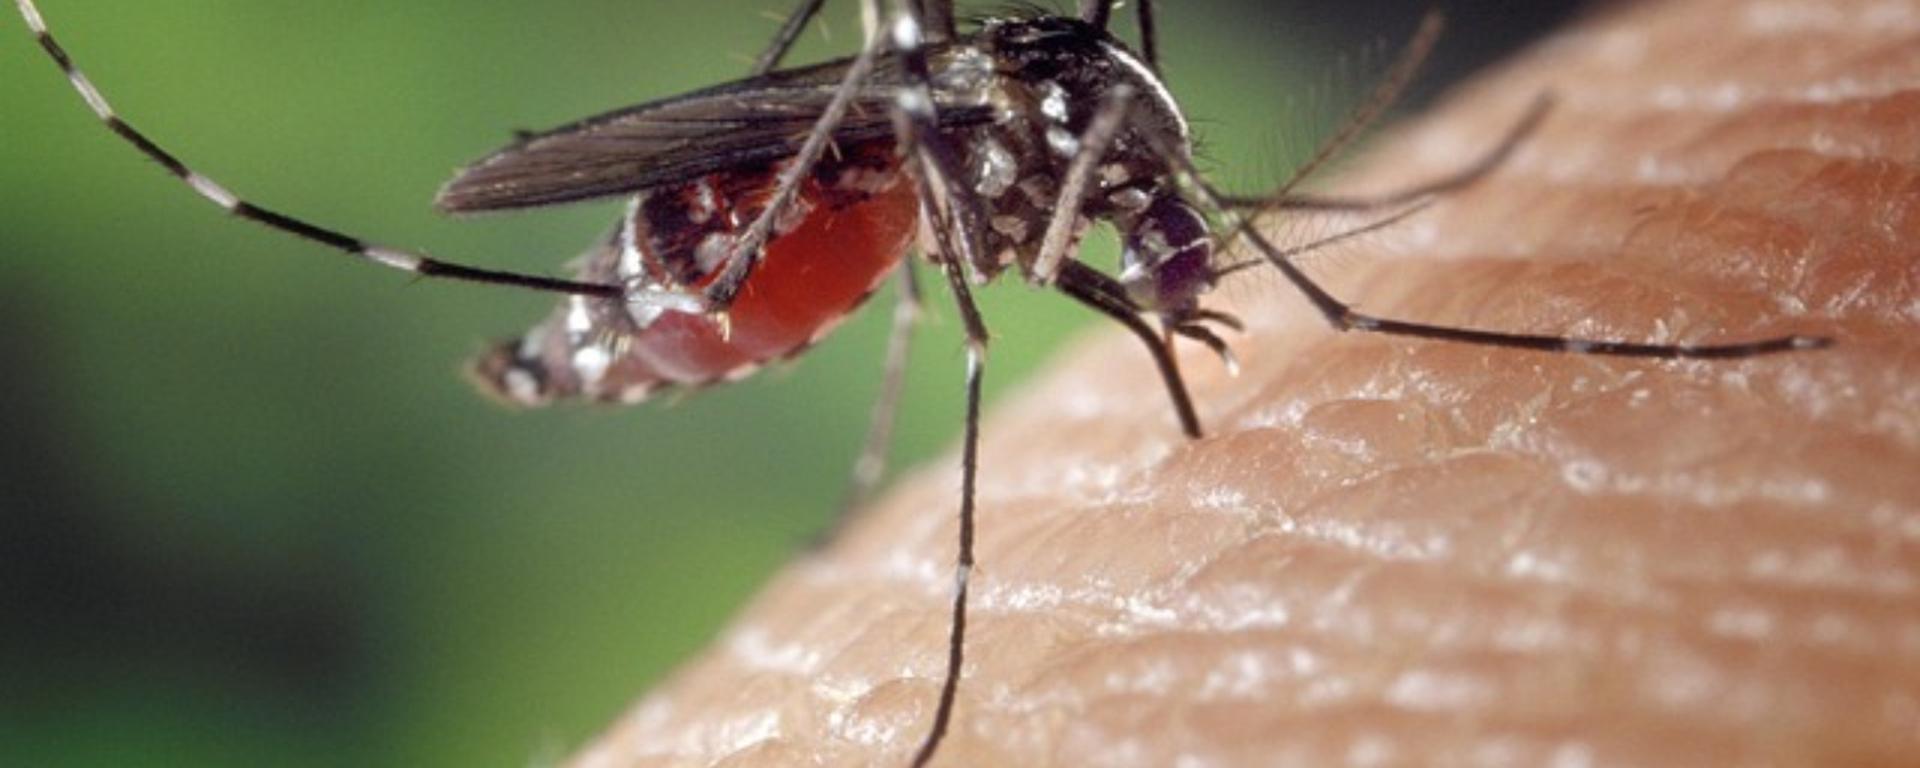 Dengue en Lima Metropolitana: así avanzó la enfermedad semana a semana hasta llegar a picos históricos